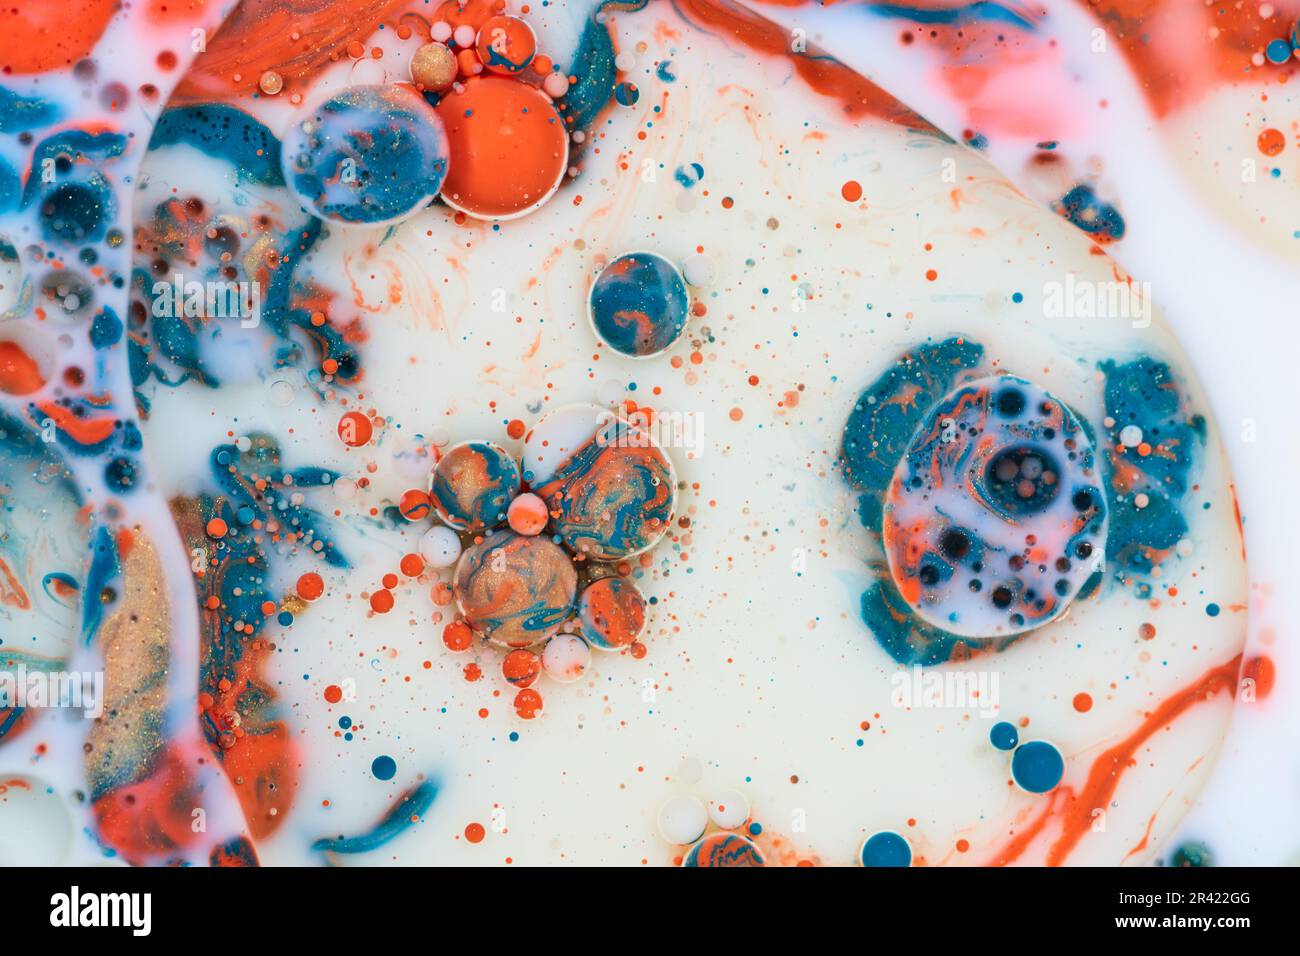 Fondo orizzontale astratto con latte bianco e vernice blu acrilico arancione e oro versato con olio creando effetto marmorizzato Foto Stock